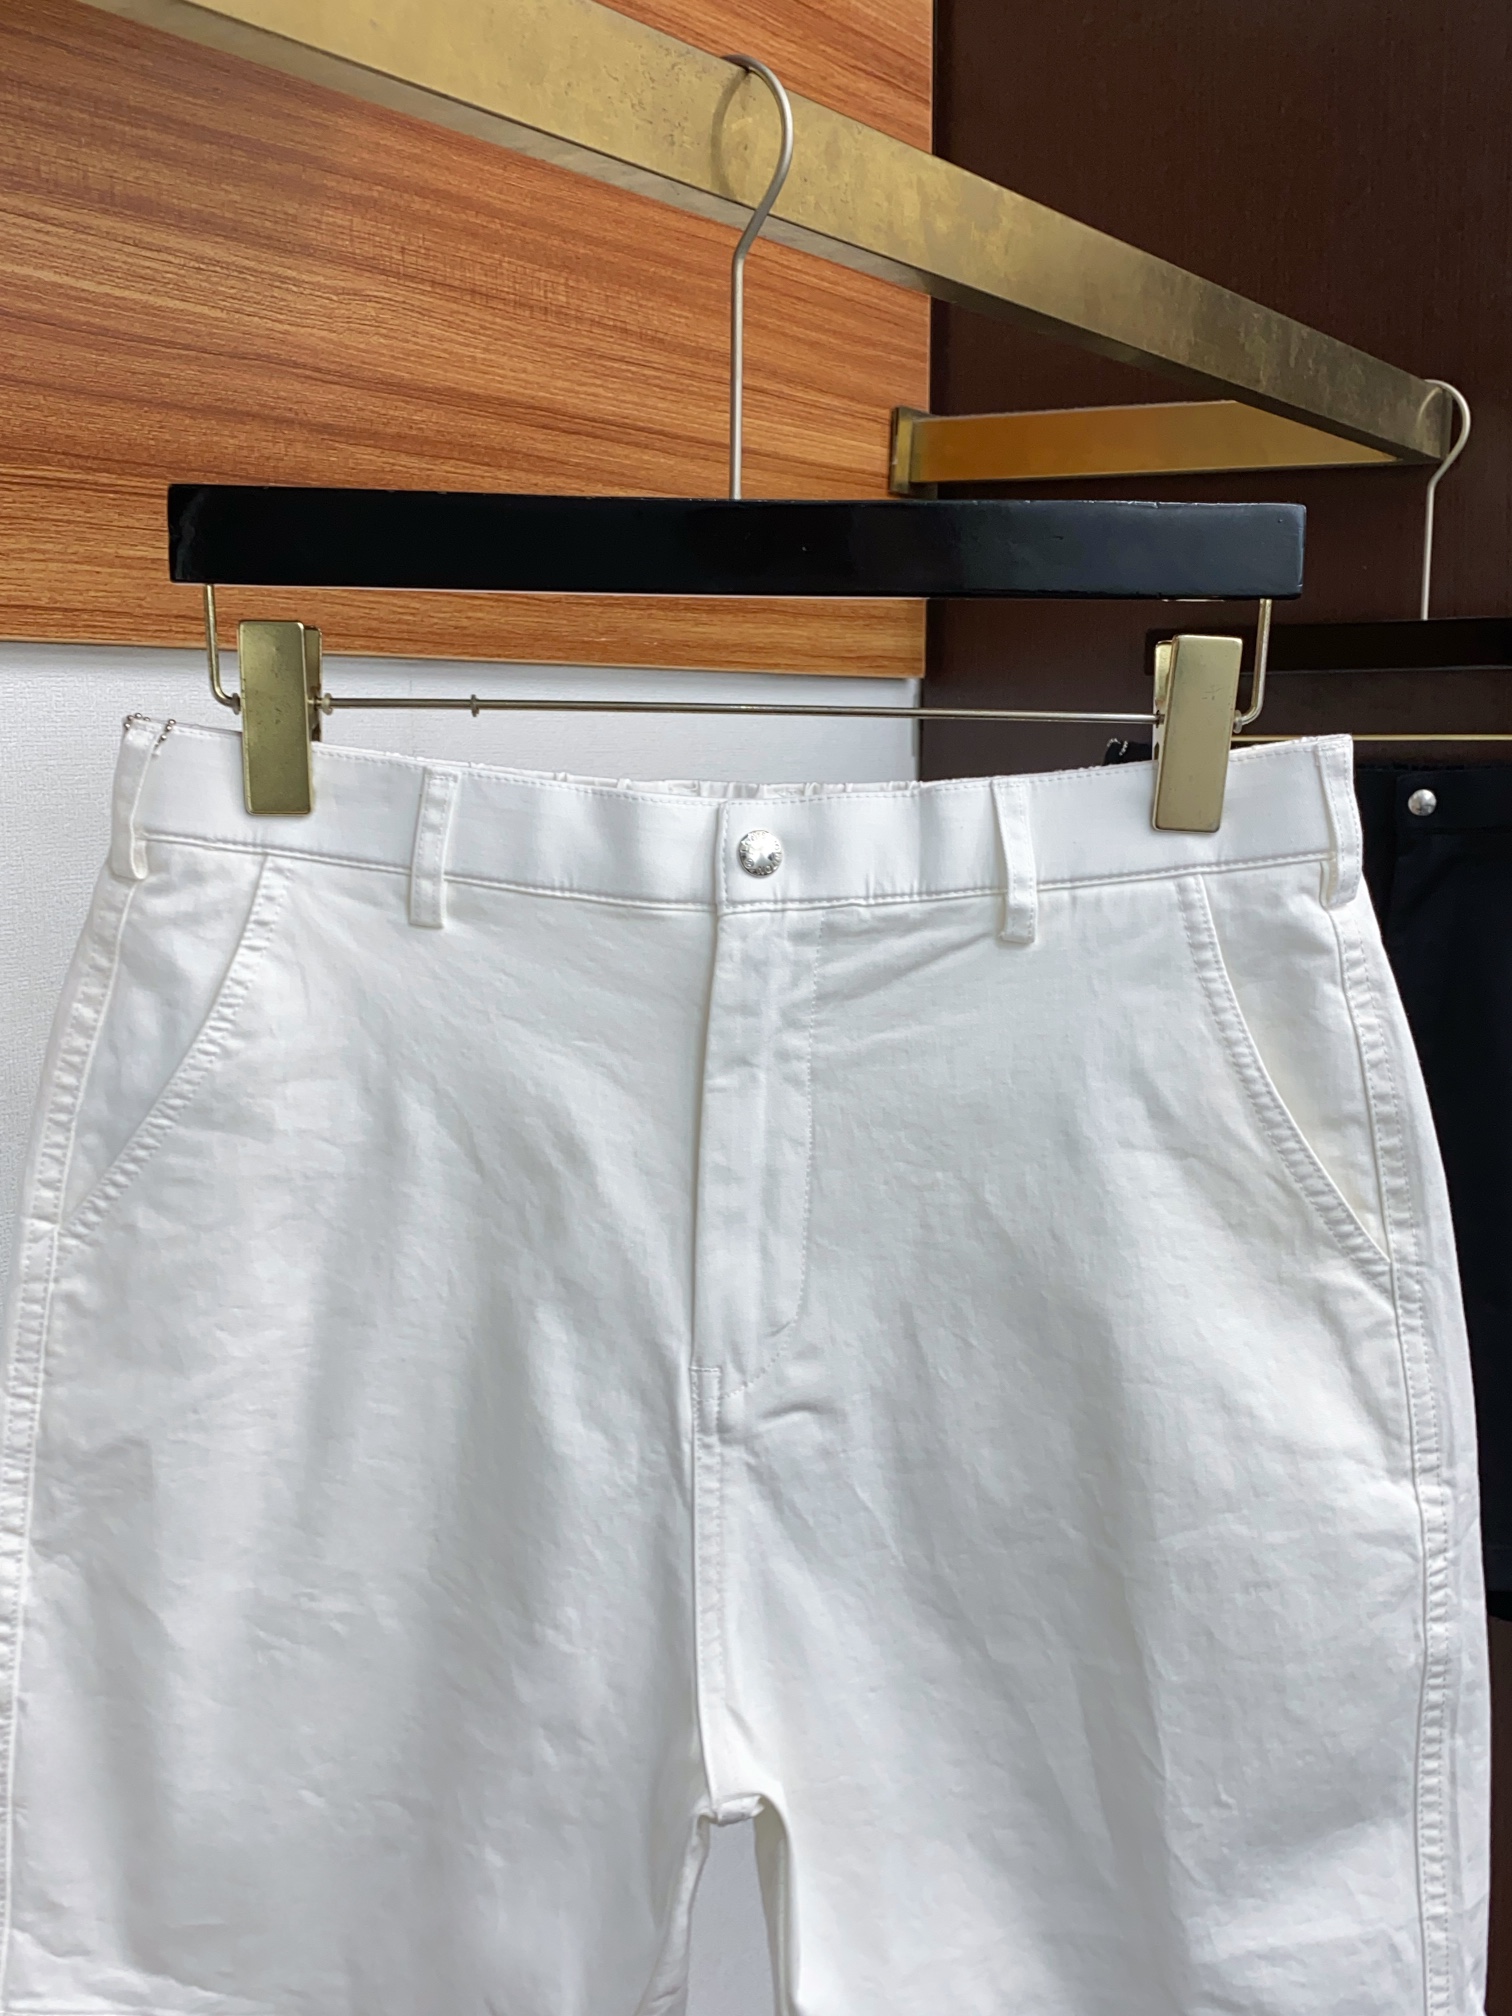 v路易威登贸易公司渠道订单顶级4袋休闲短裤高端限量版极品牛货白金级完美品相定制专柜定单面料直接入专柜性质